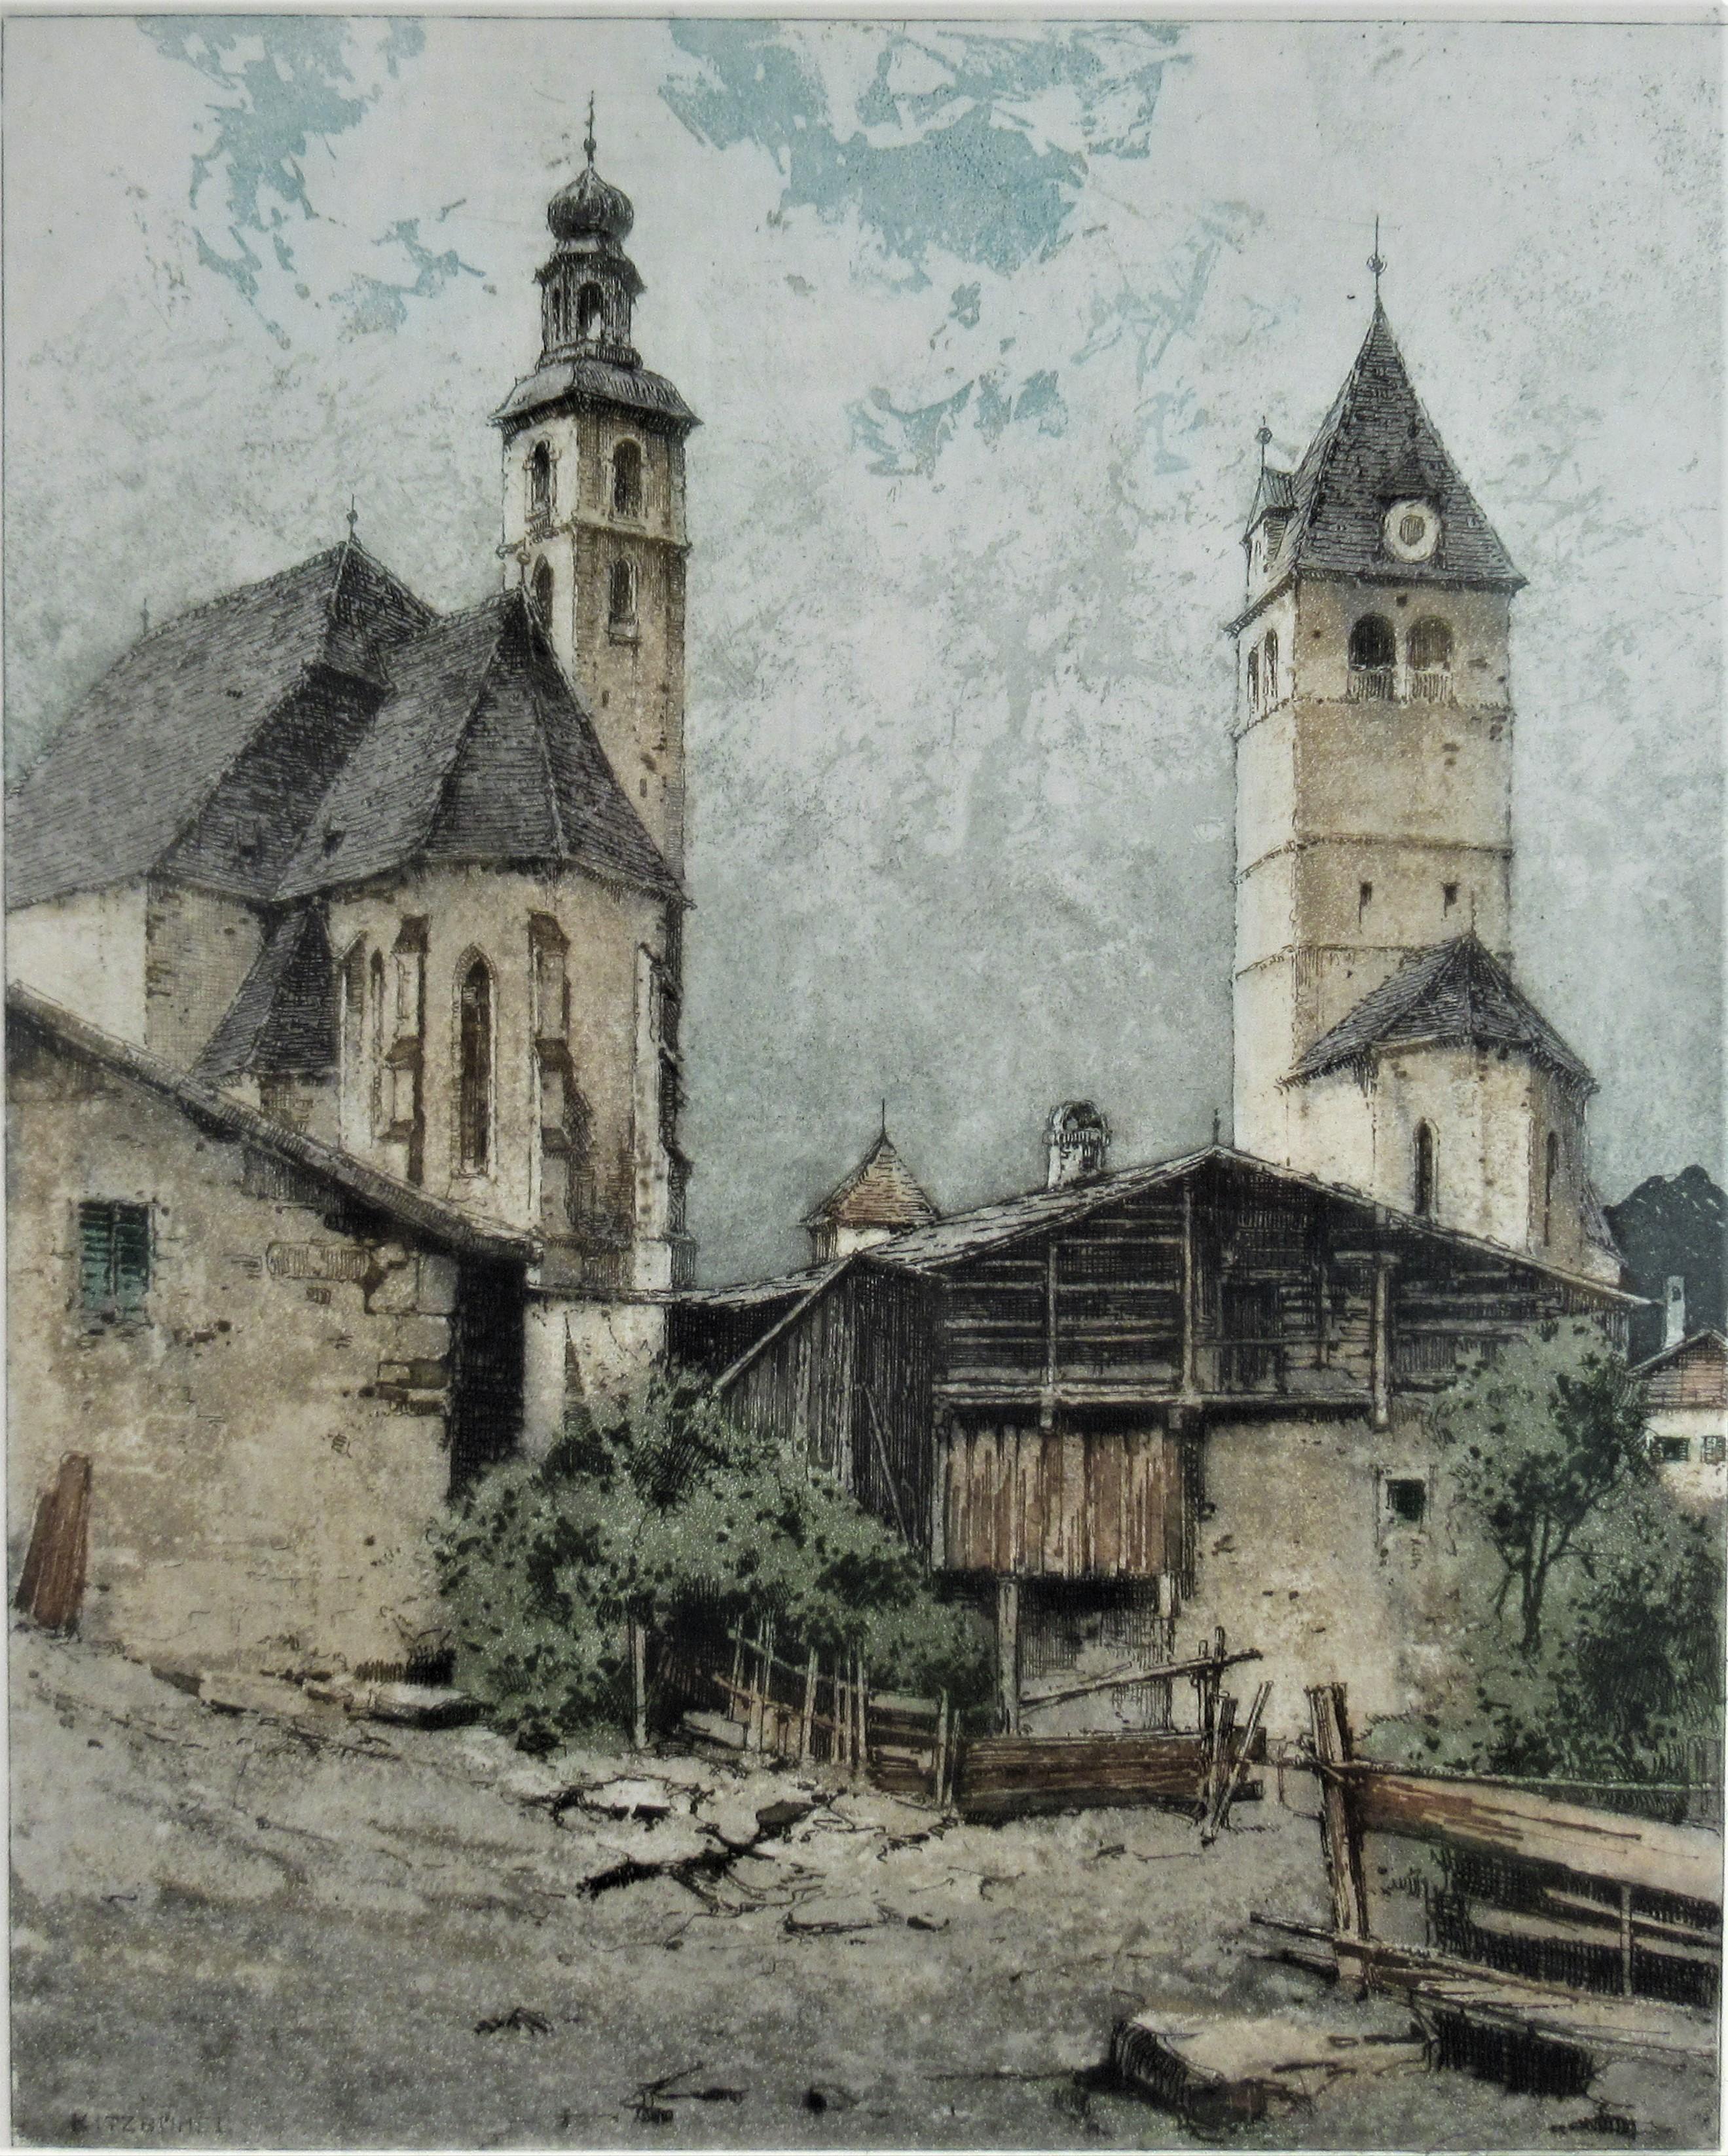 Kitzbuehel, Tyrol - Print by Josef Eidenberger